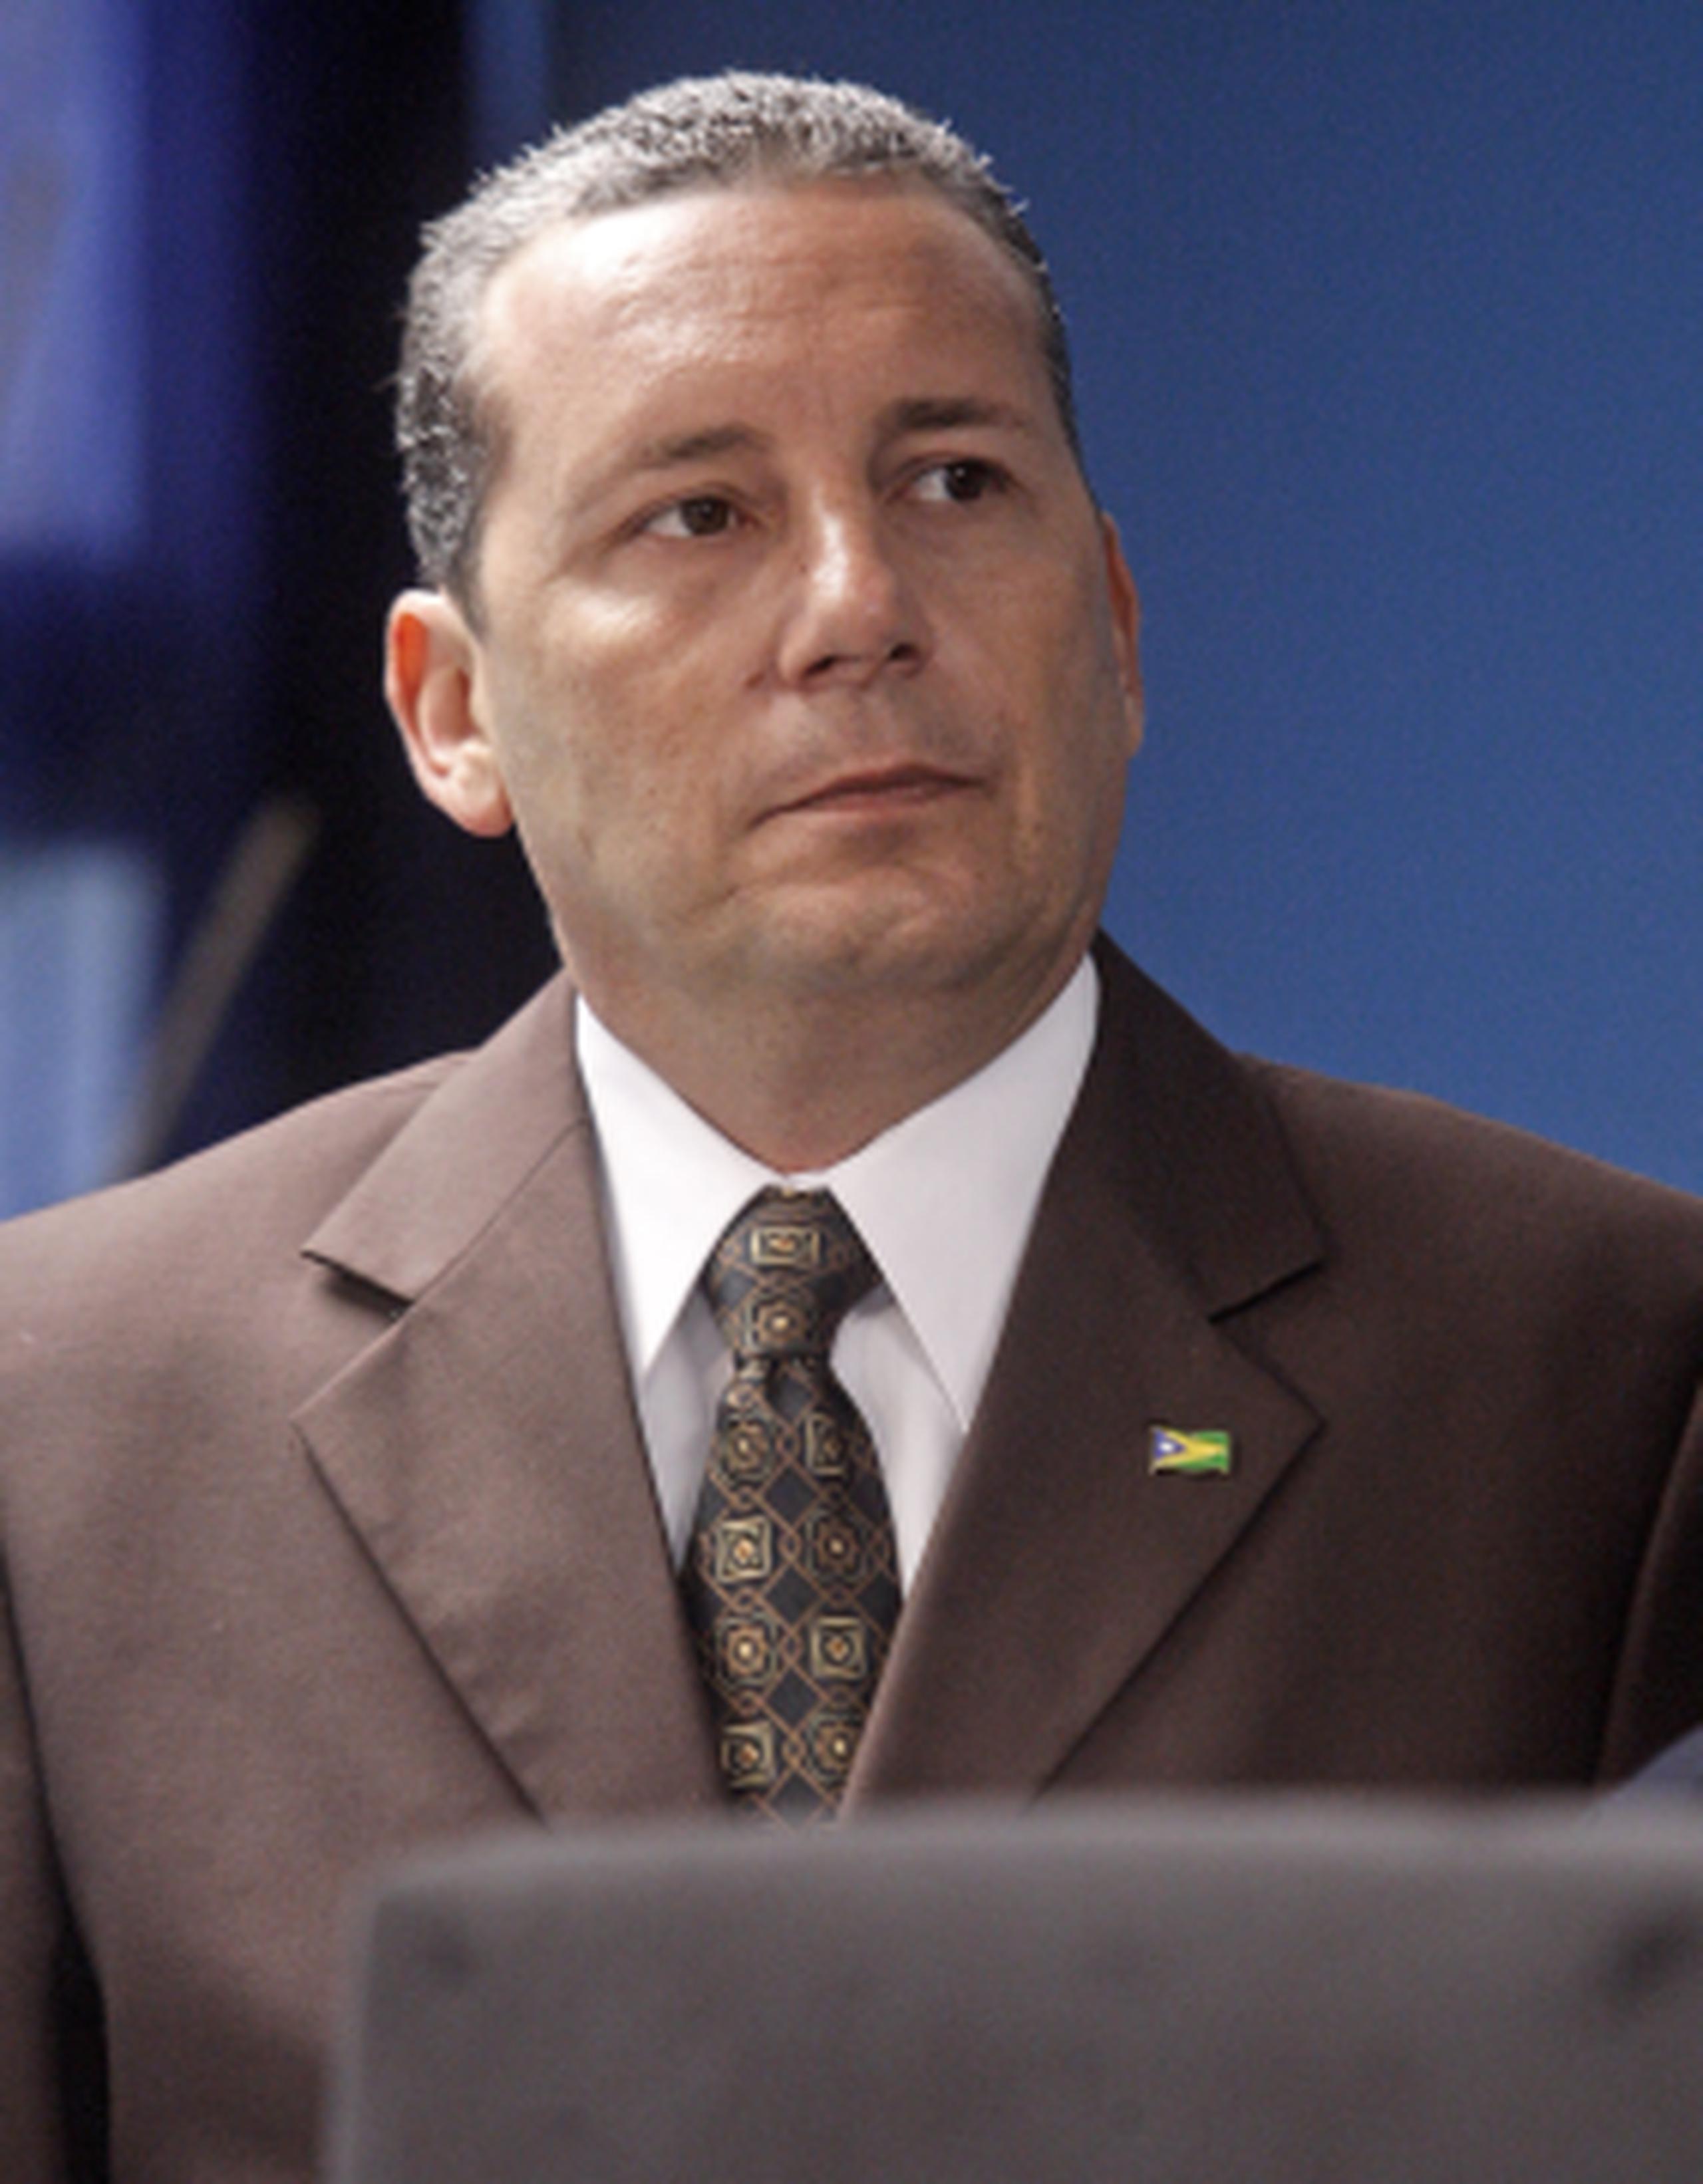 El alcalde de Aguas Buenas, Luis Arroyo Chiqués, afiliado al Partido Popular Democrático, retenía una ventaja de 69 votos frente a su rival. (Archivo)